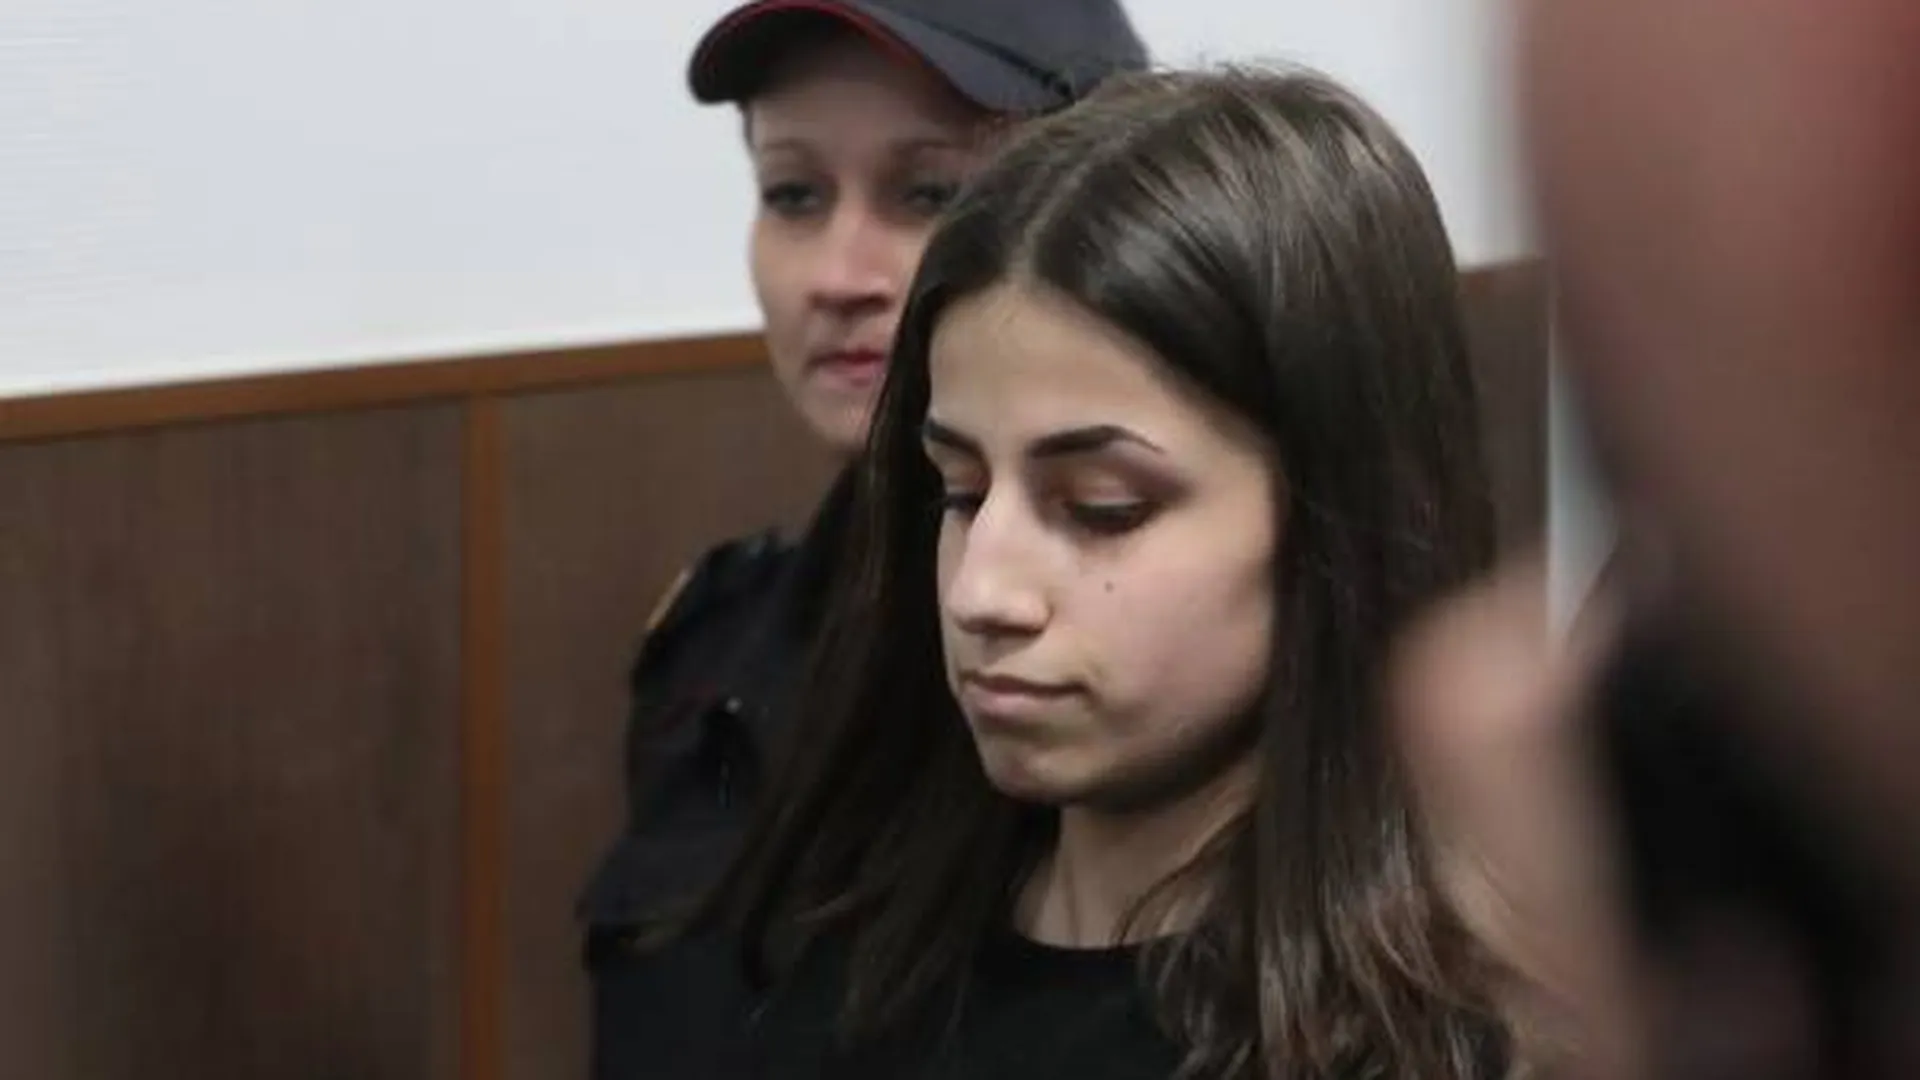 СМИ сообщили, что СК направляет дело убитого дочерьми Хачатуряна в прокуратуру для утверждения обвинения